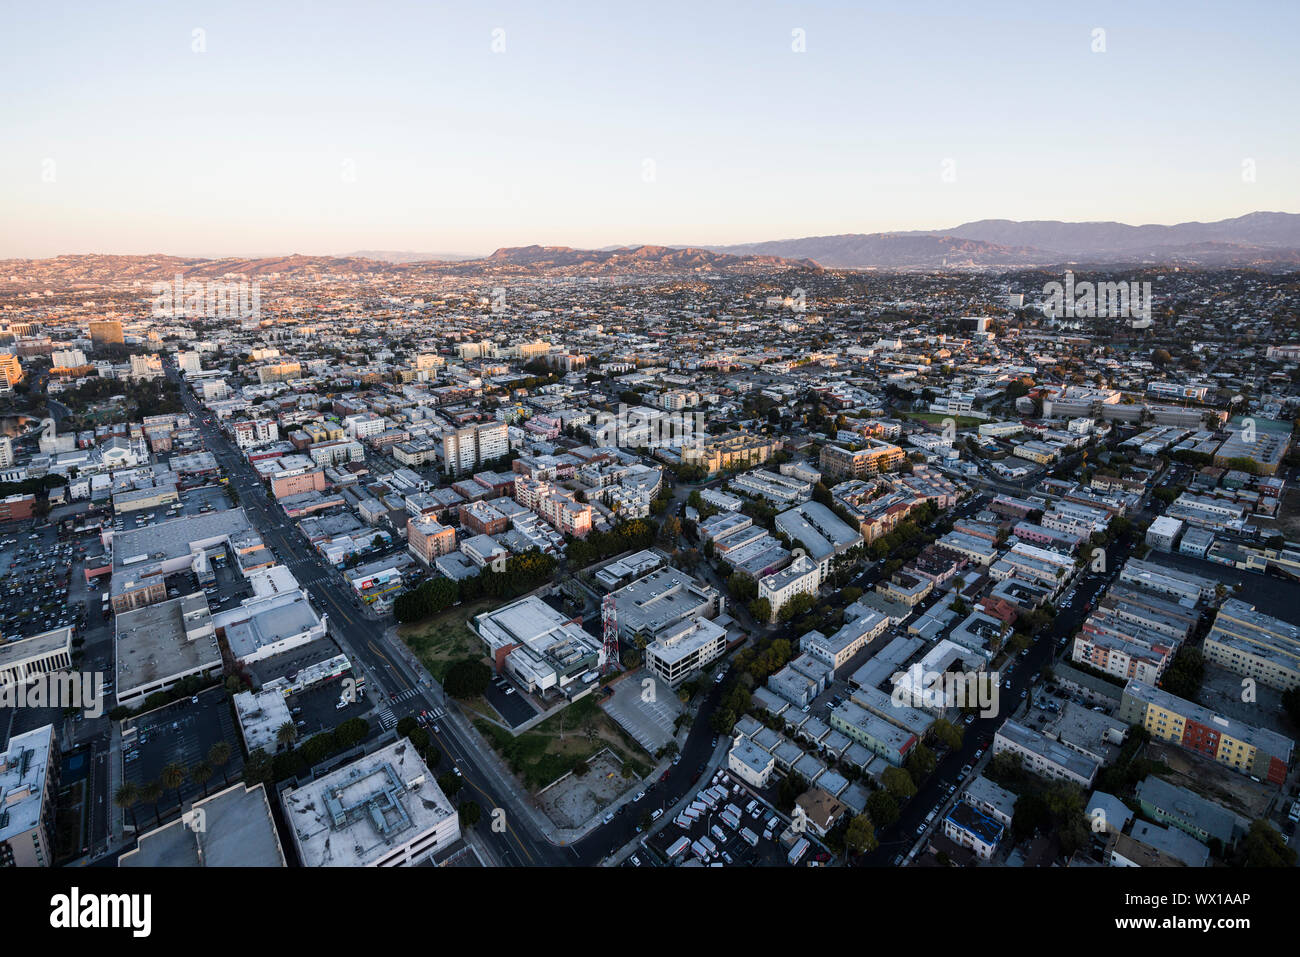 Los Angeles, Californie, USA - 20 Février 2018 : Tôt le matin vue aérienne au-dessus de la 6ème rue dans la région de la ville de Corée urbaine de Los Angeles. Banque D'Images